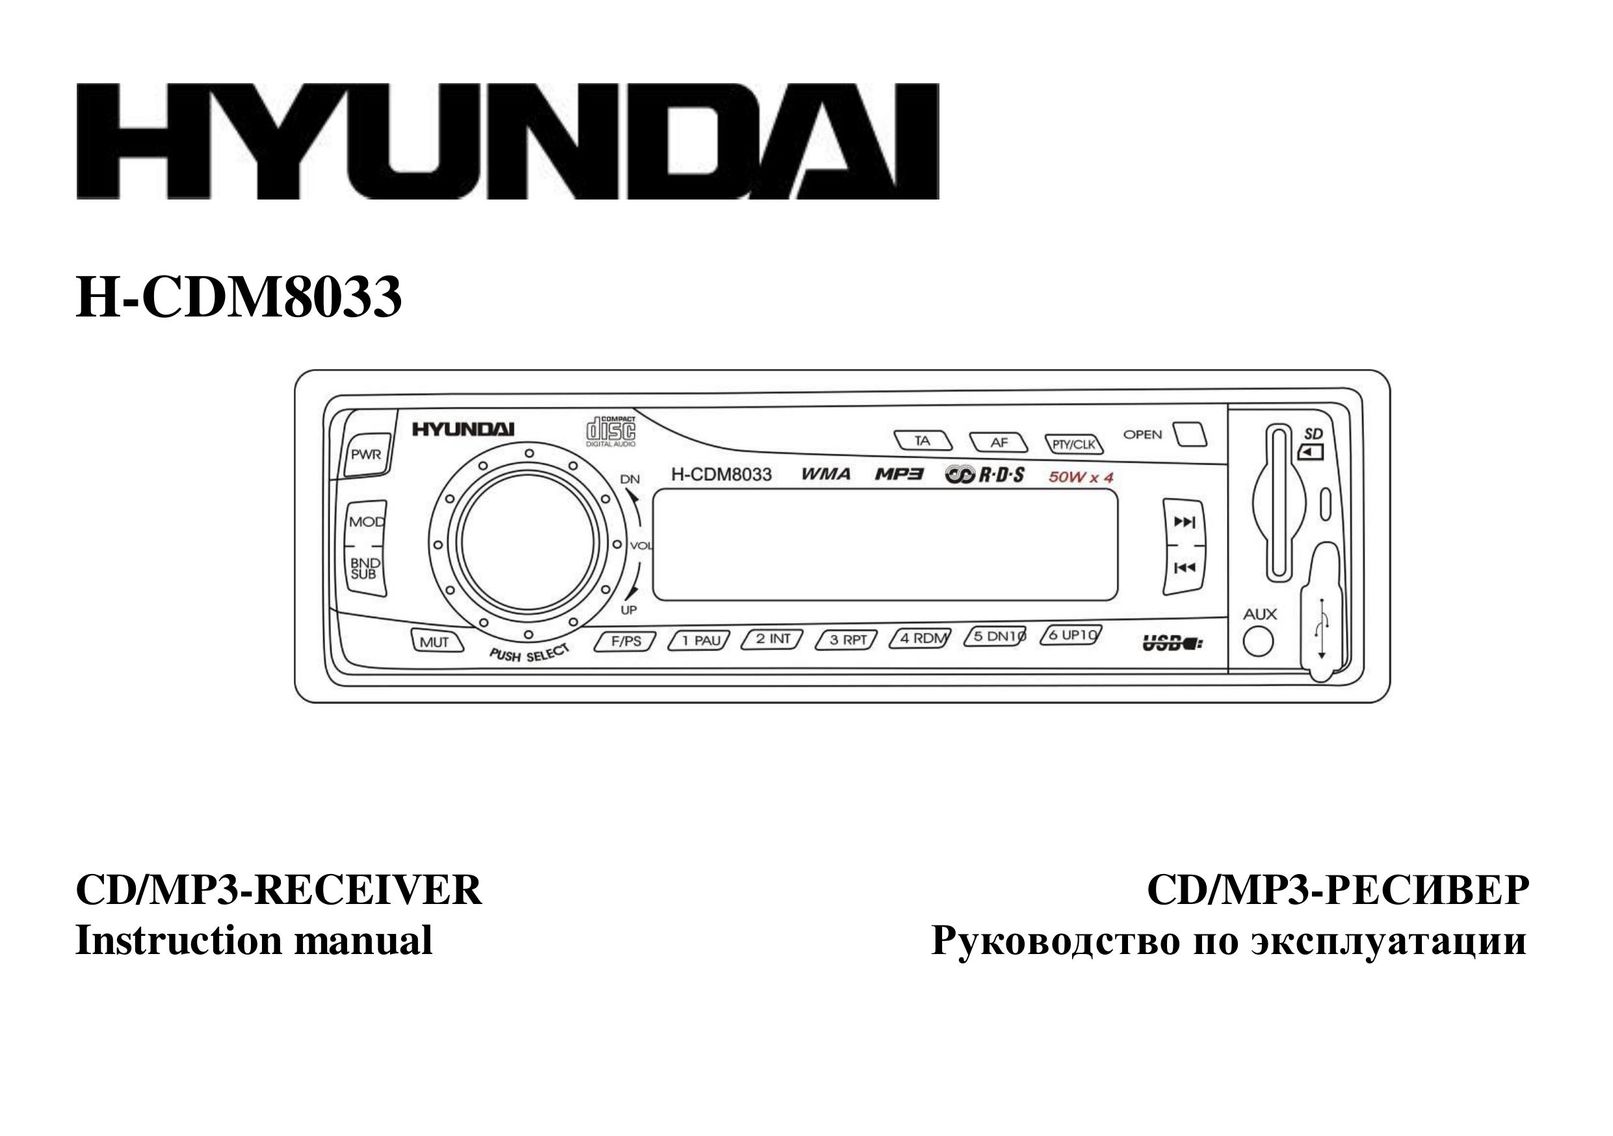 Hyundai IT H-CDM8033 CD Player User Manual